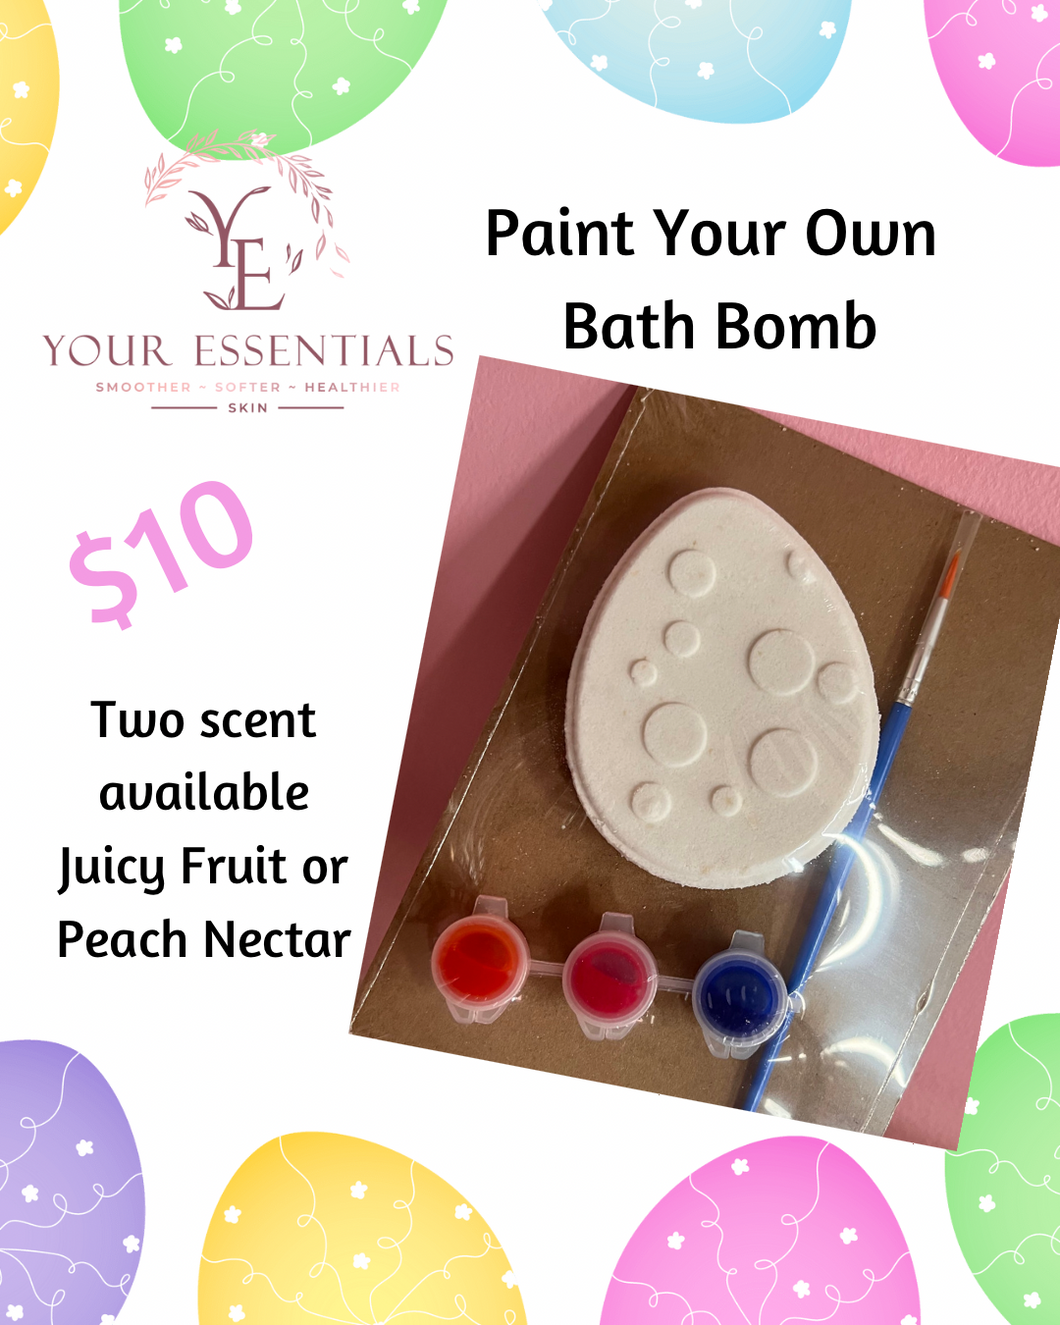 Paint Your Own Bath Bomb